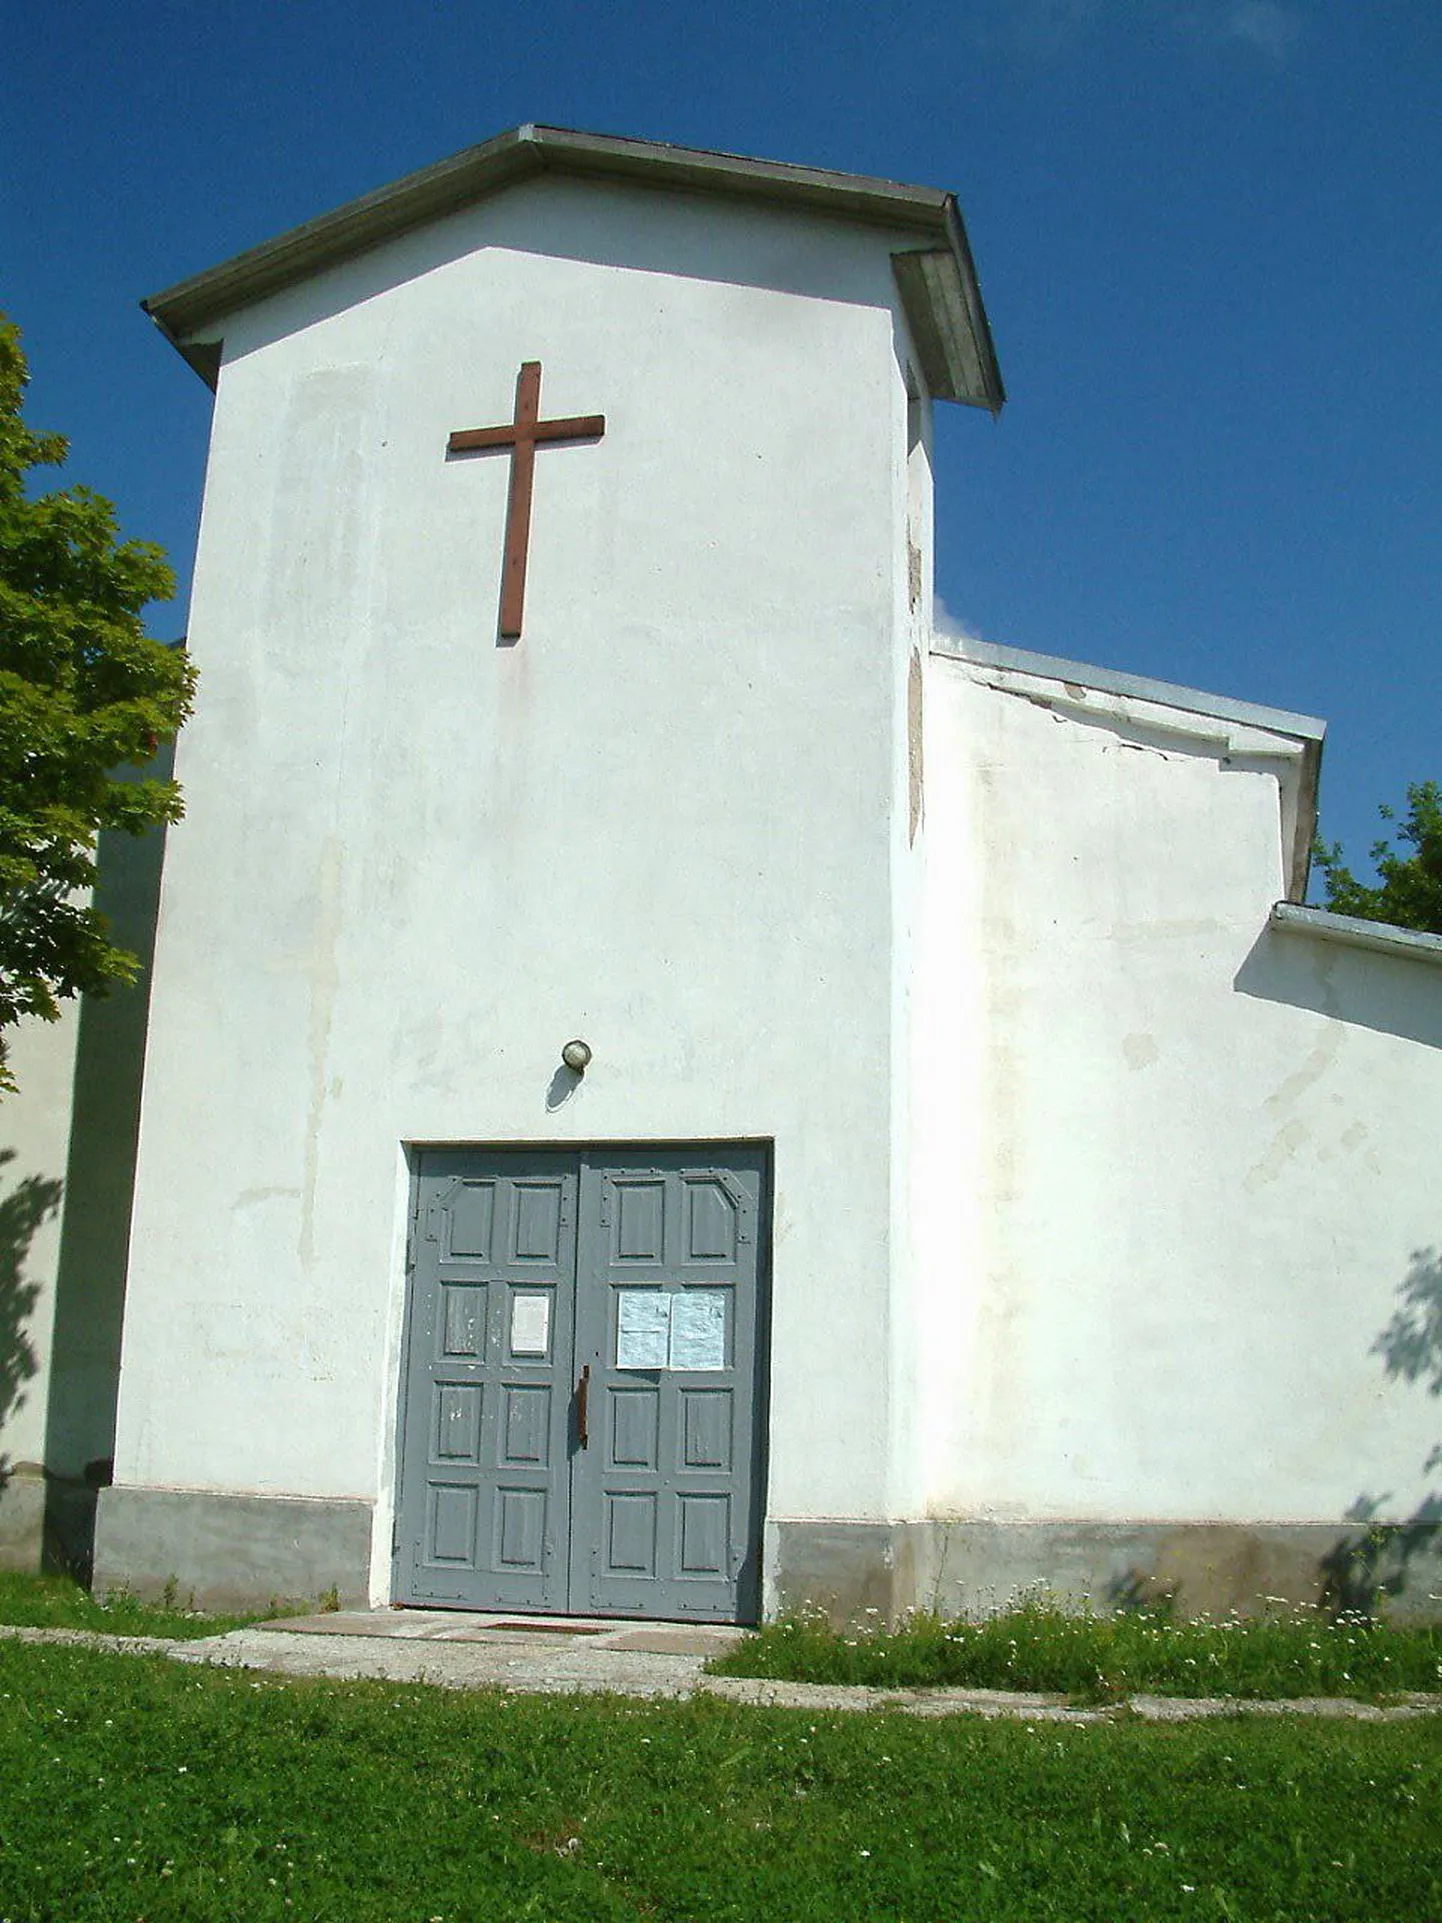 Церковь на улице Крегольма неоднократно подвергалась нападениям вандалов